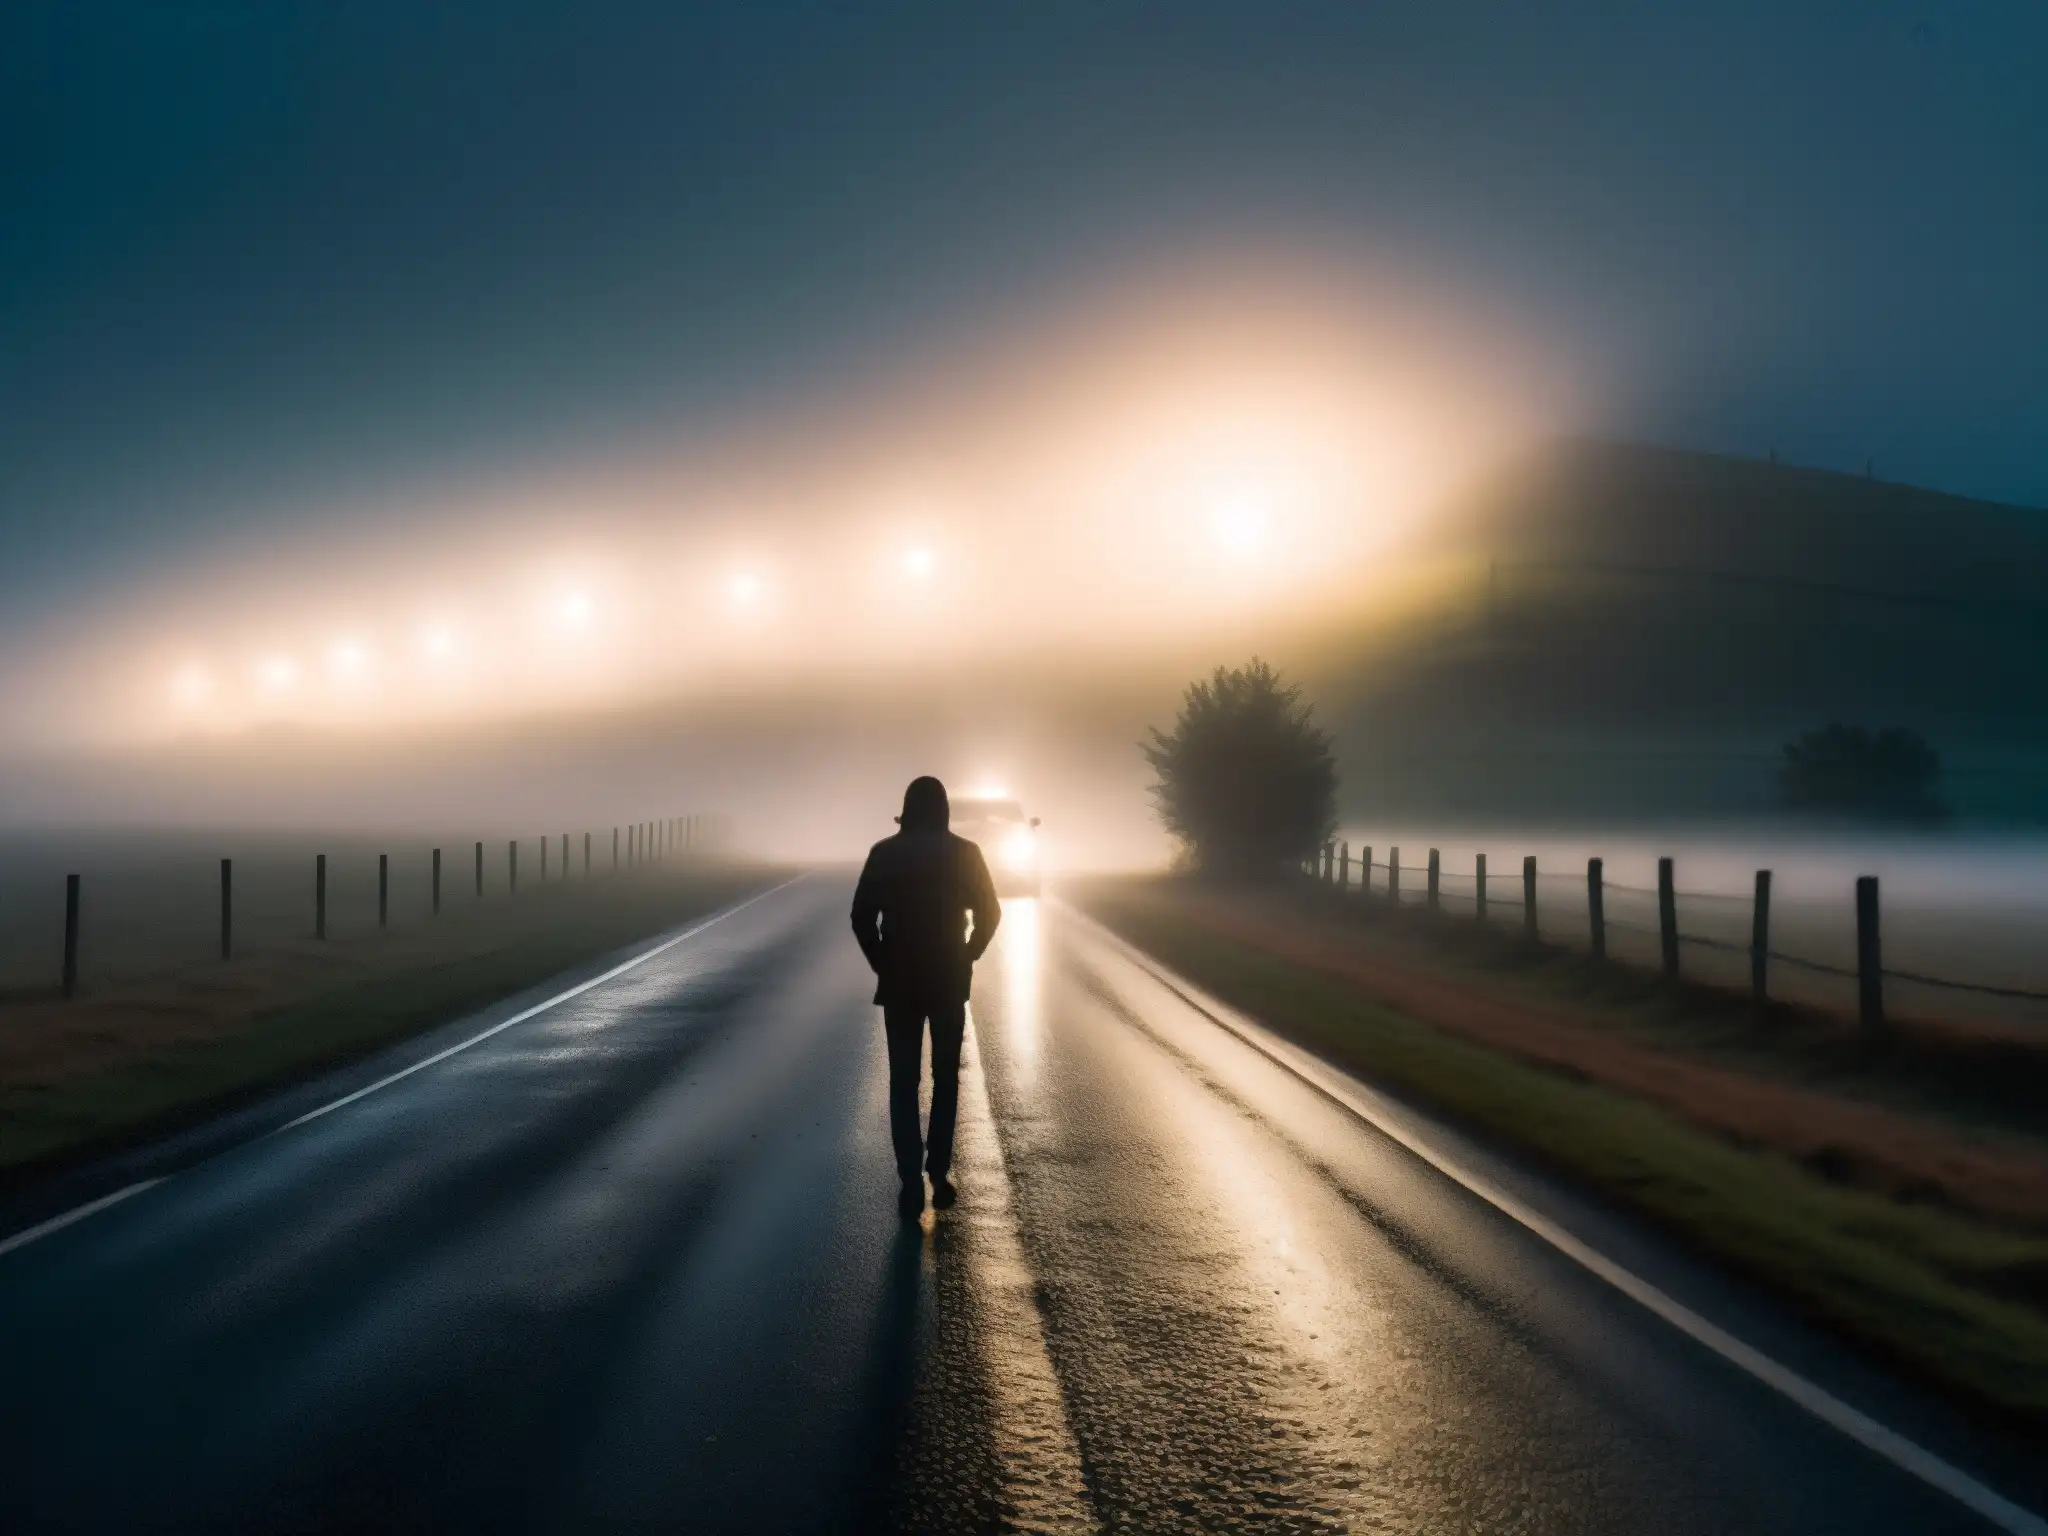 Un solitario autostopista fantasma emerge de la niebla en la oscura carretera rural, evocando mitos y leyendas urbanas